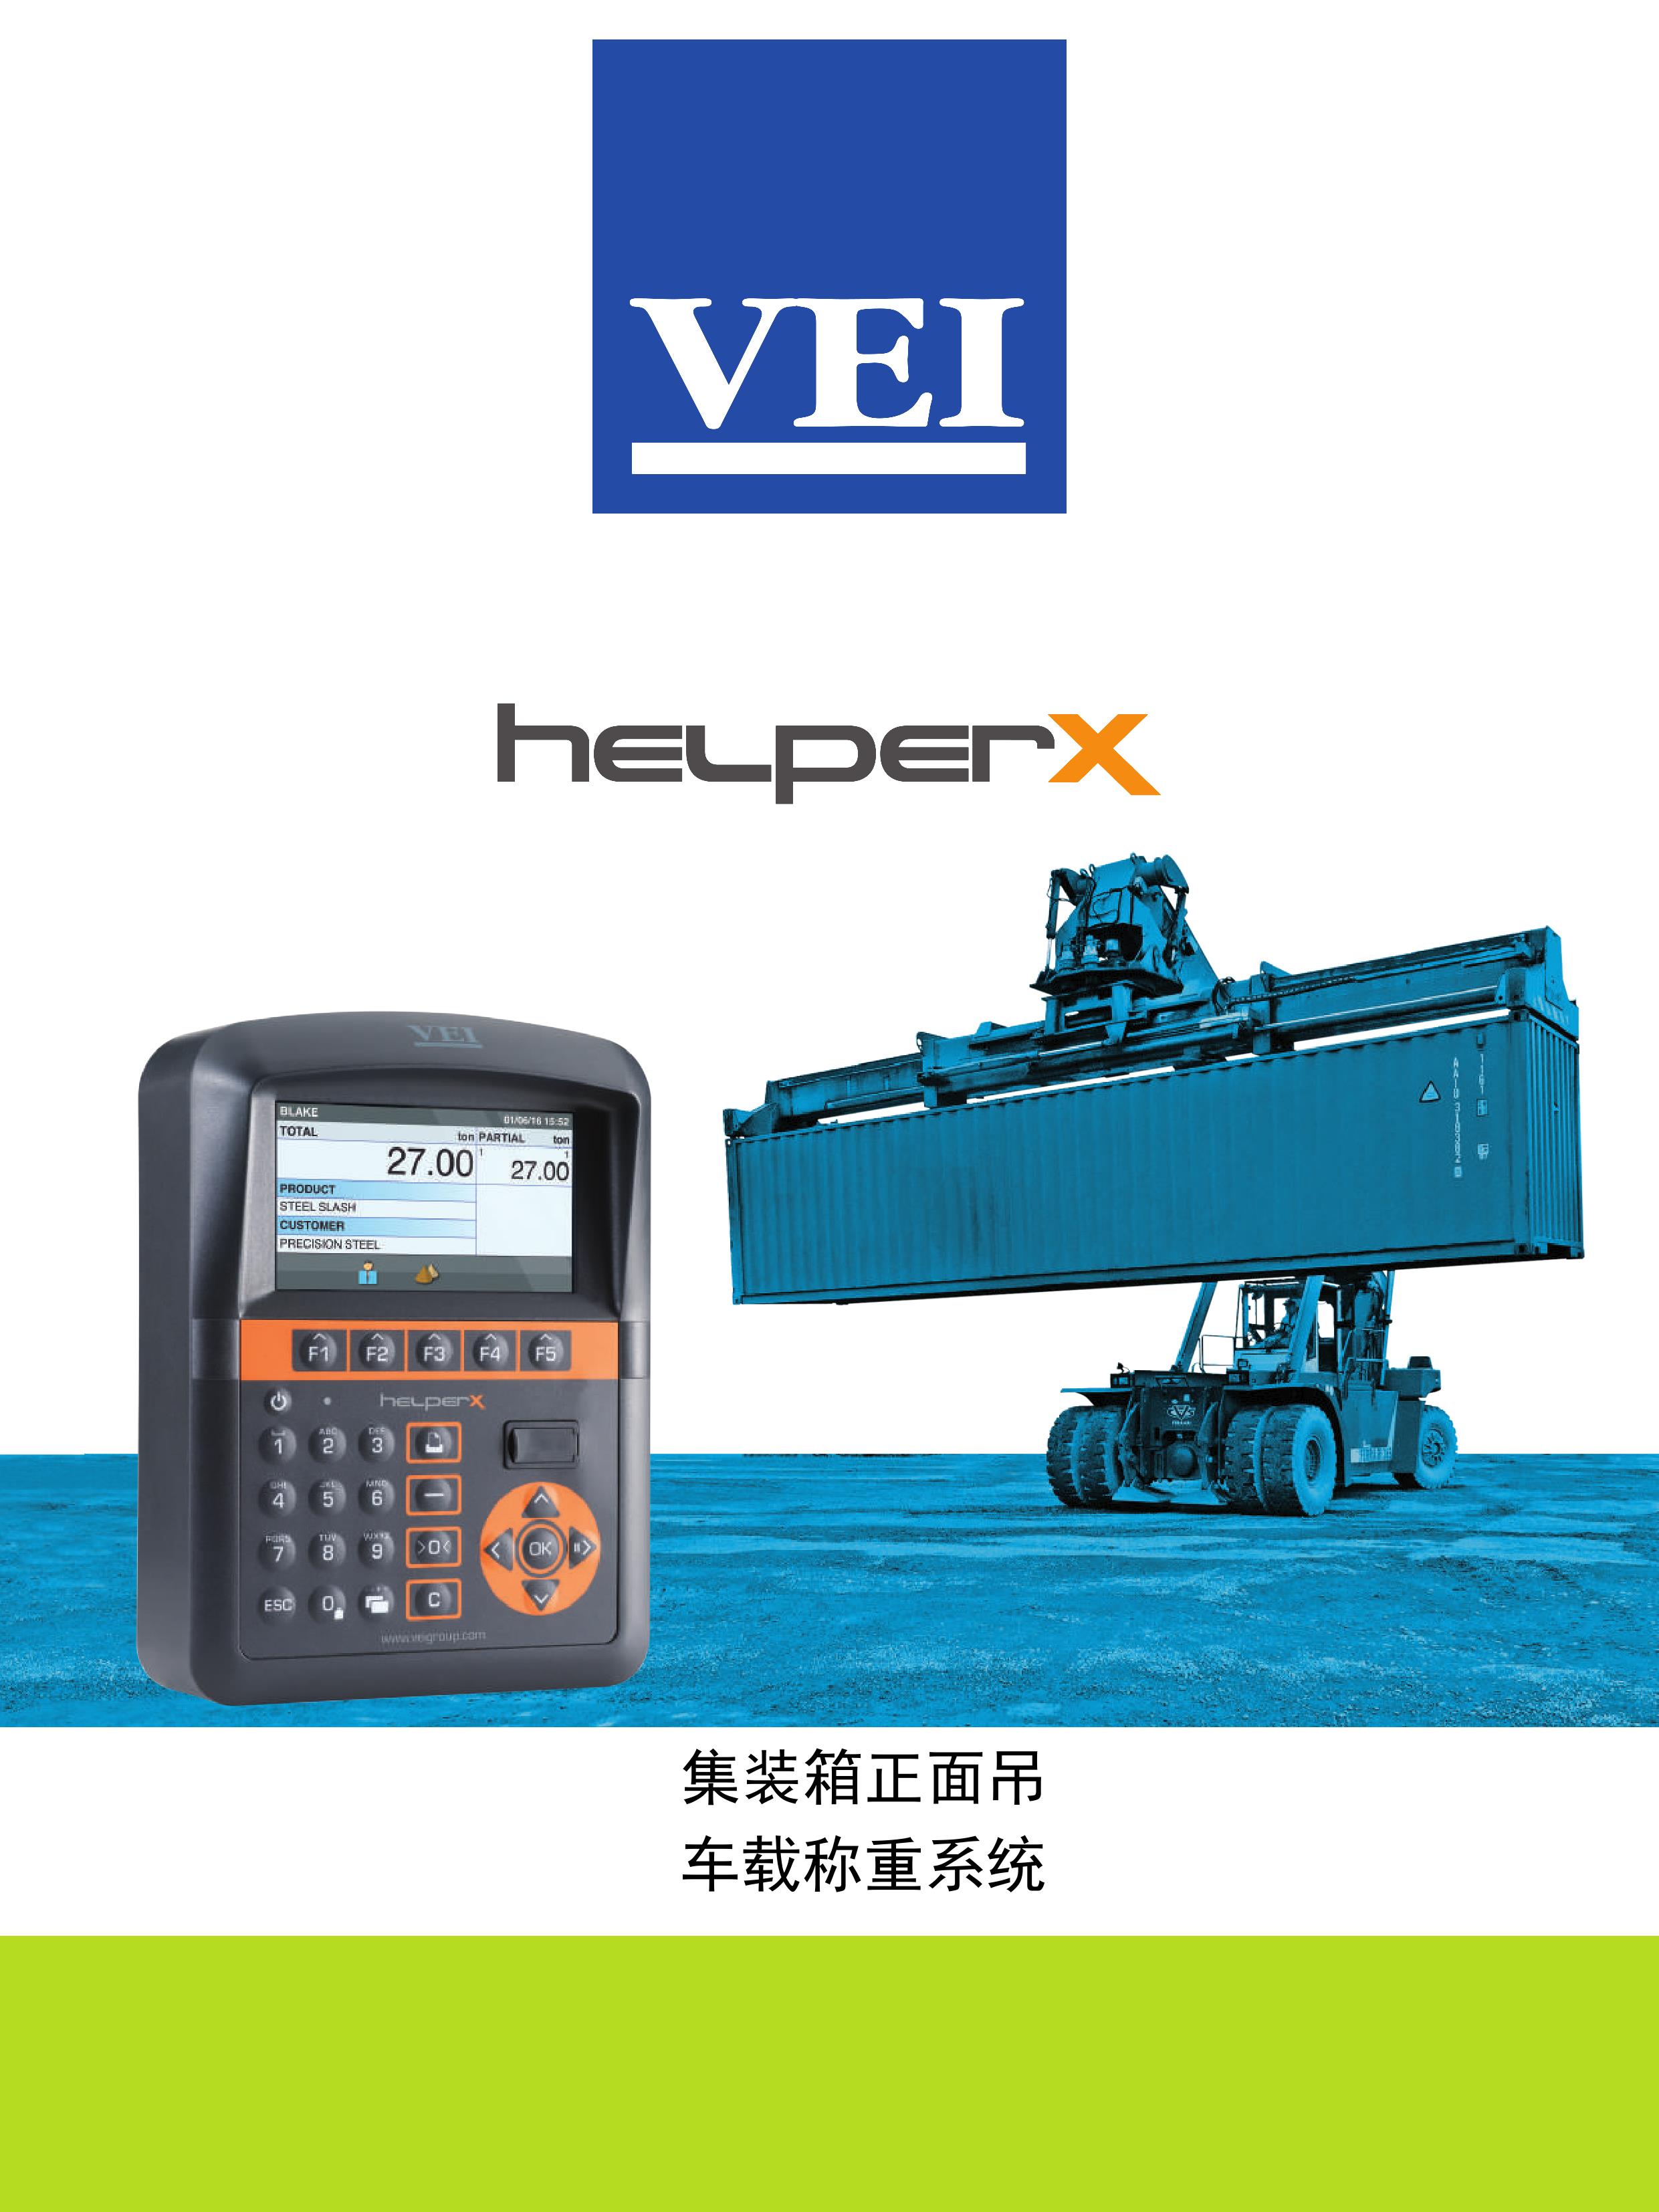 产品名称：集装箱称重系统
产品型号：HELPER X
产品规格：HELPER X